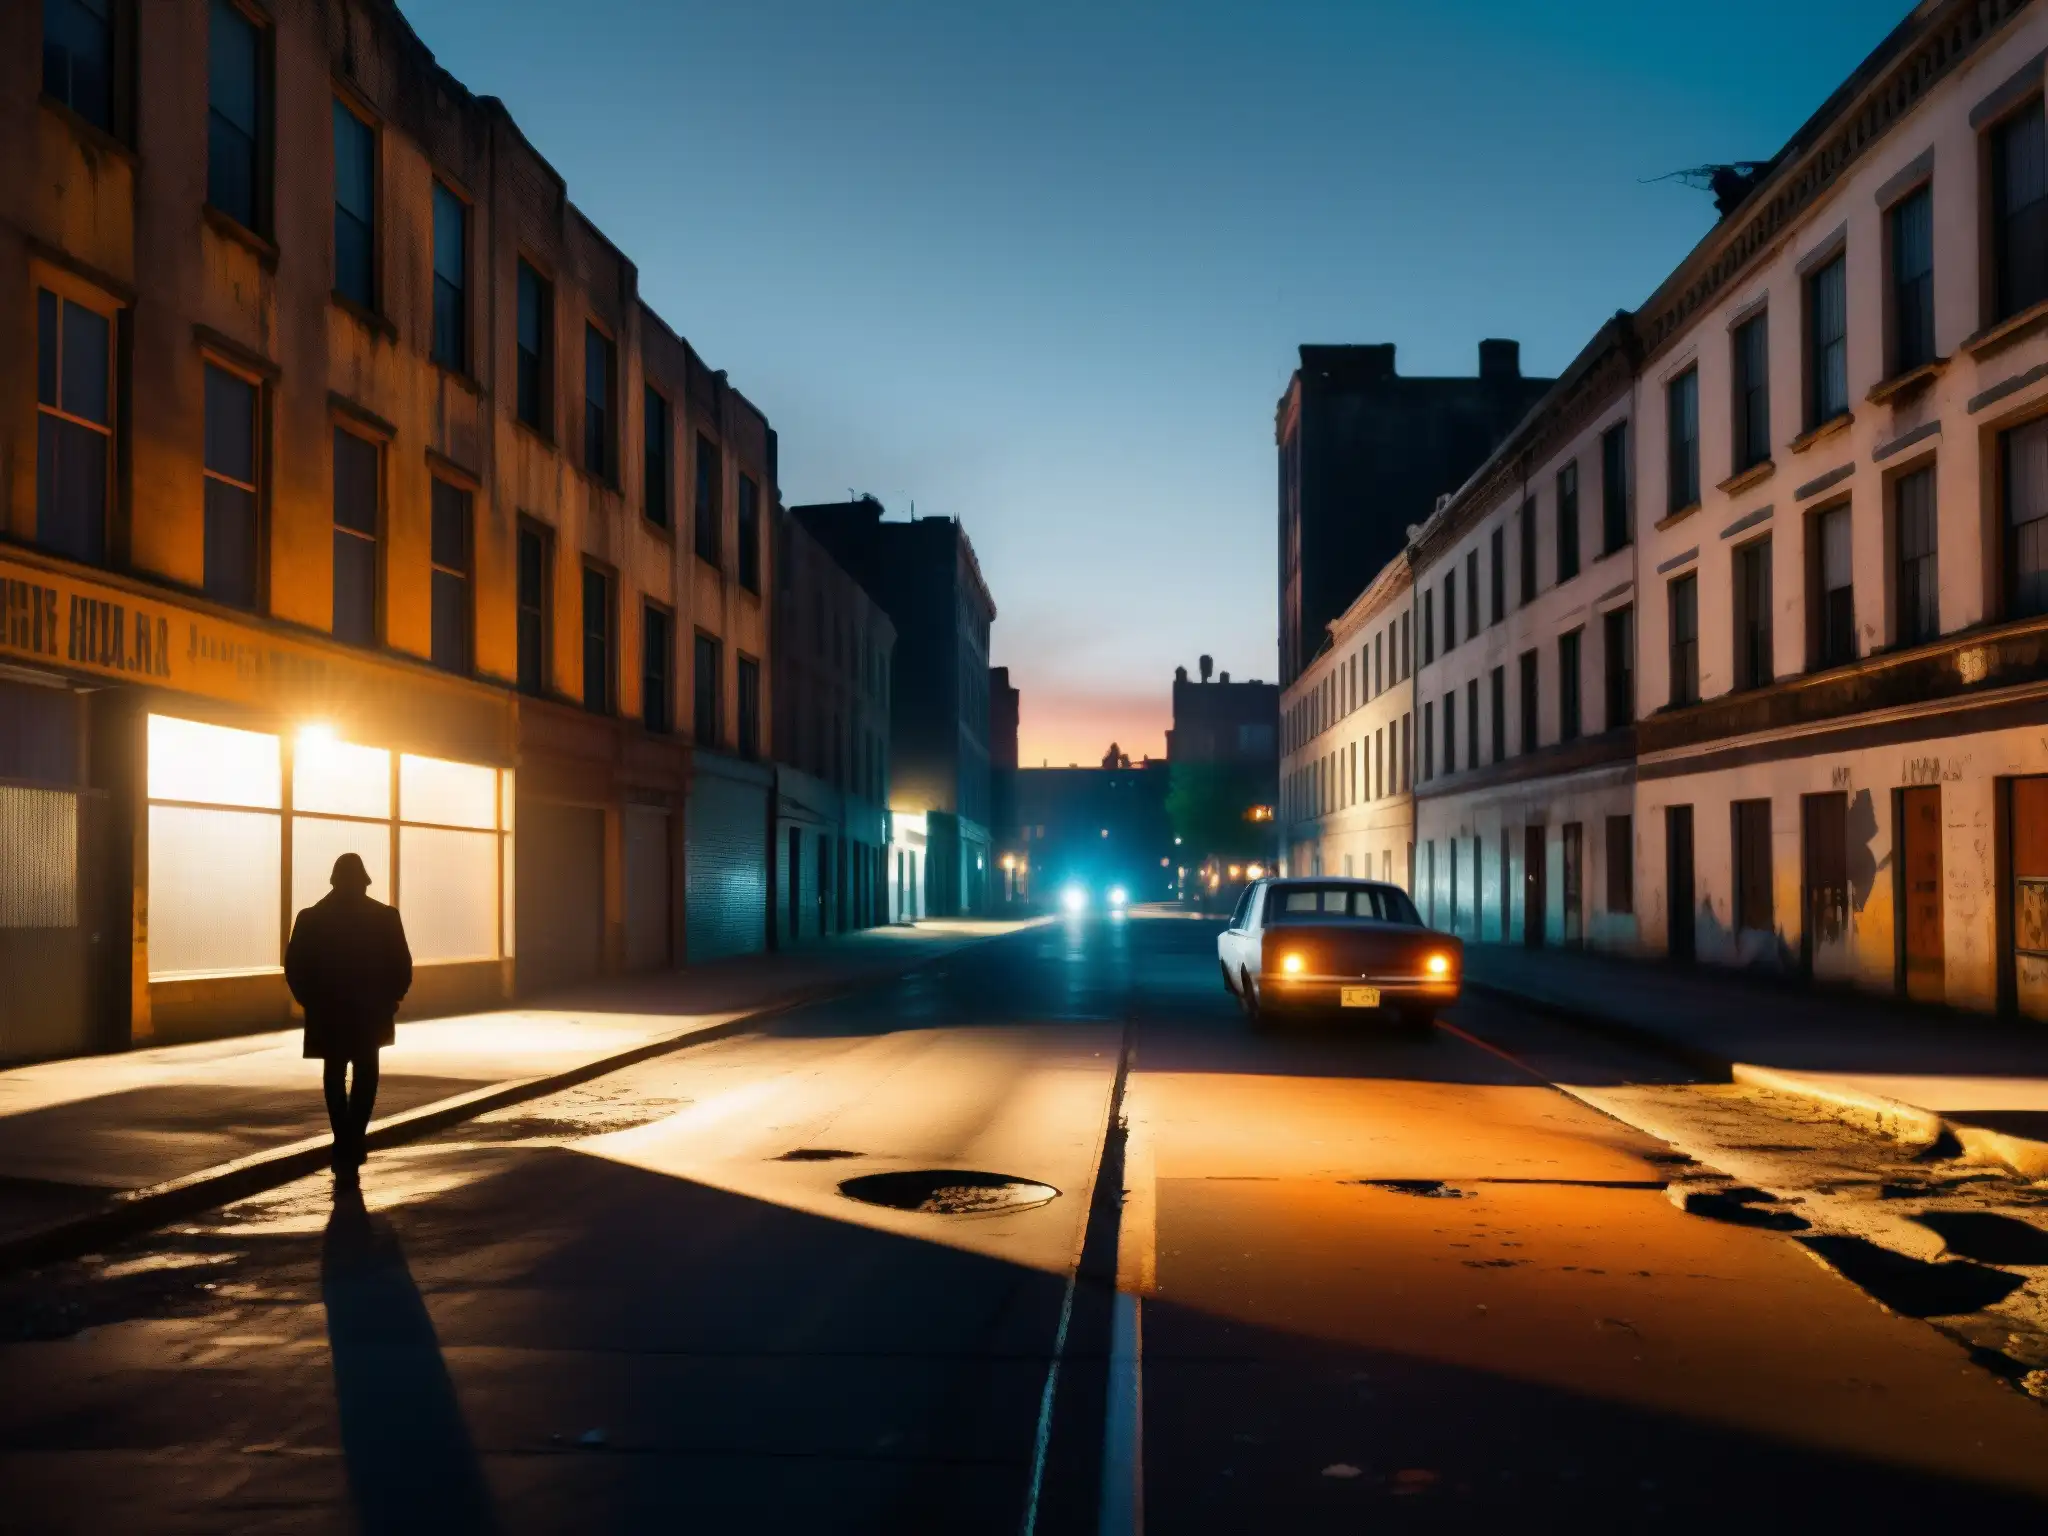 Una calle nocturna en la ciudad, llena de sombras, con una figura solitaria caminando en la distancia